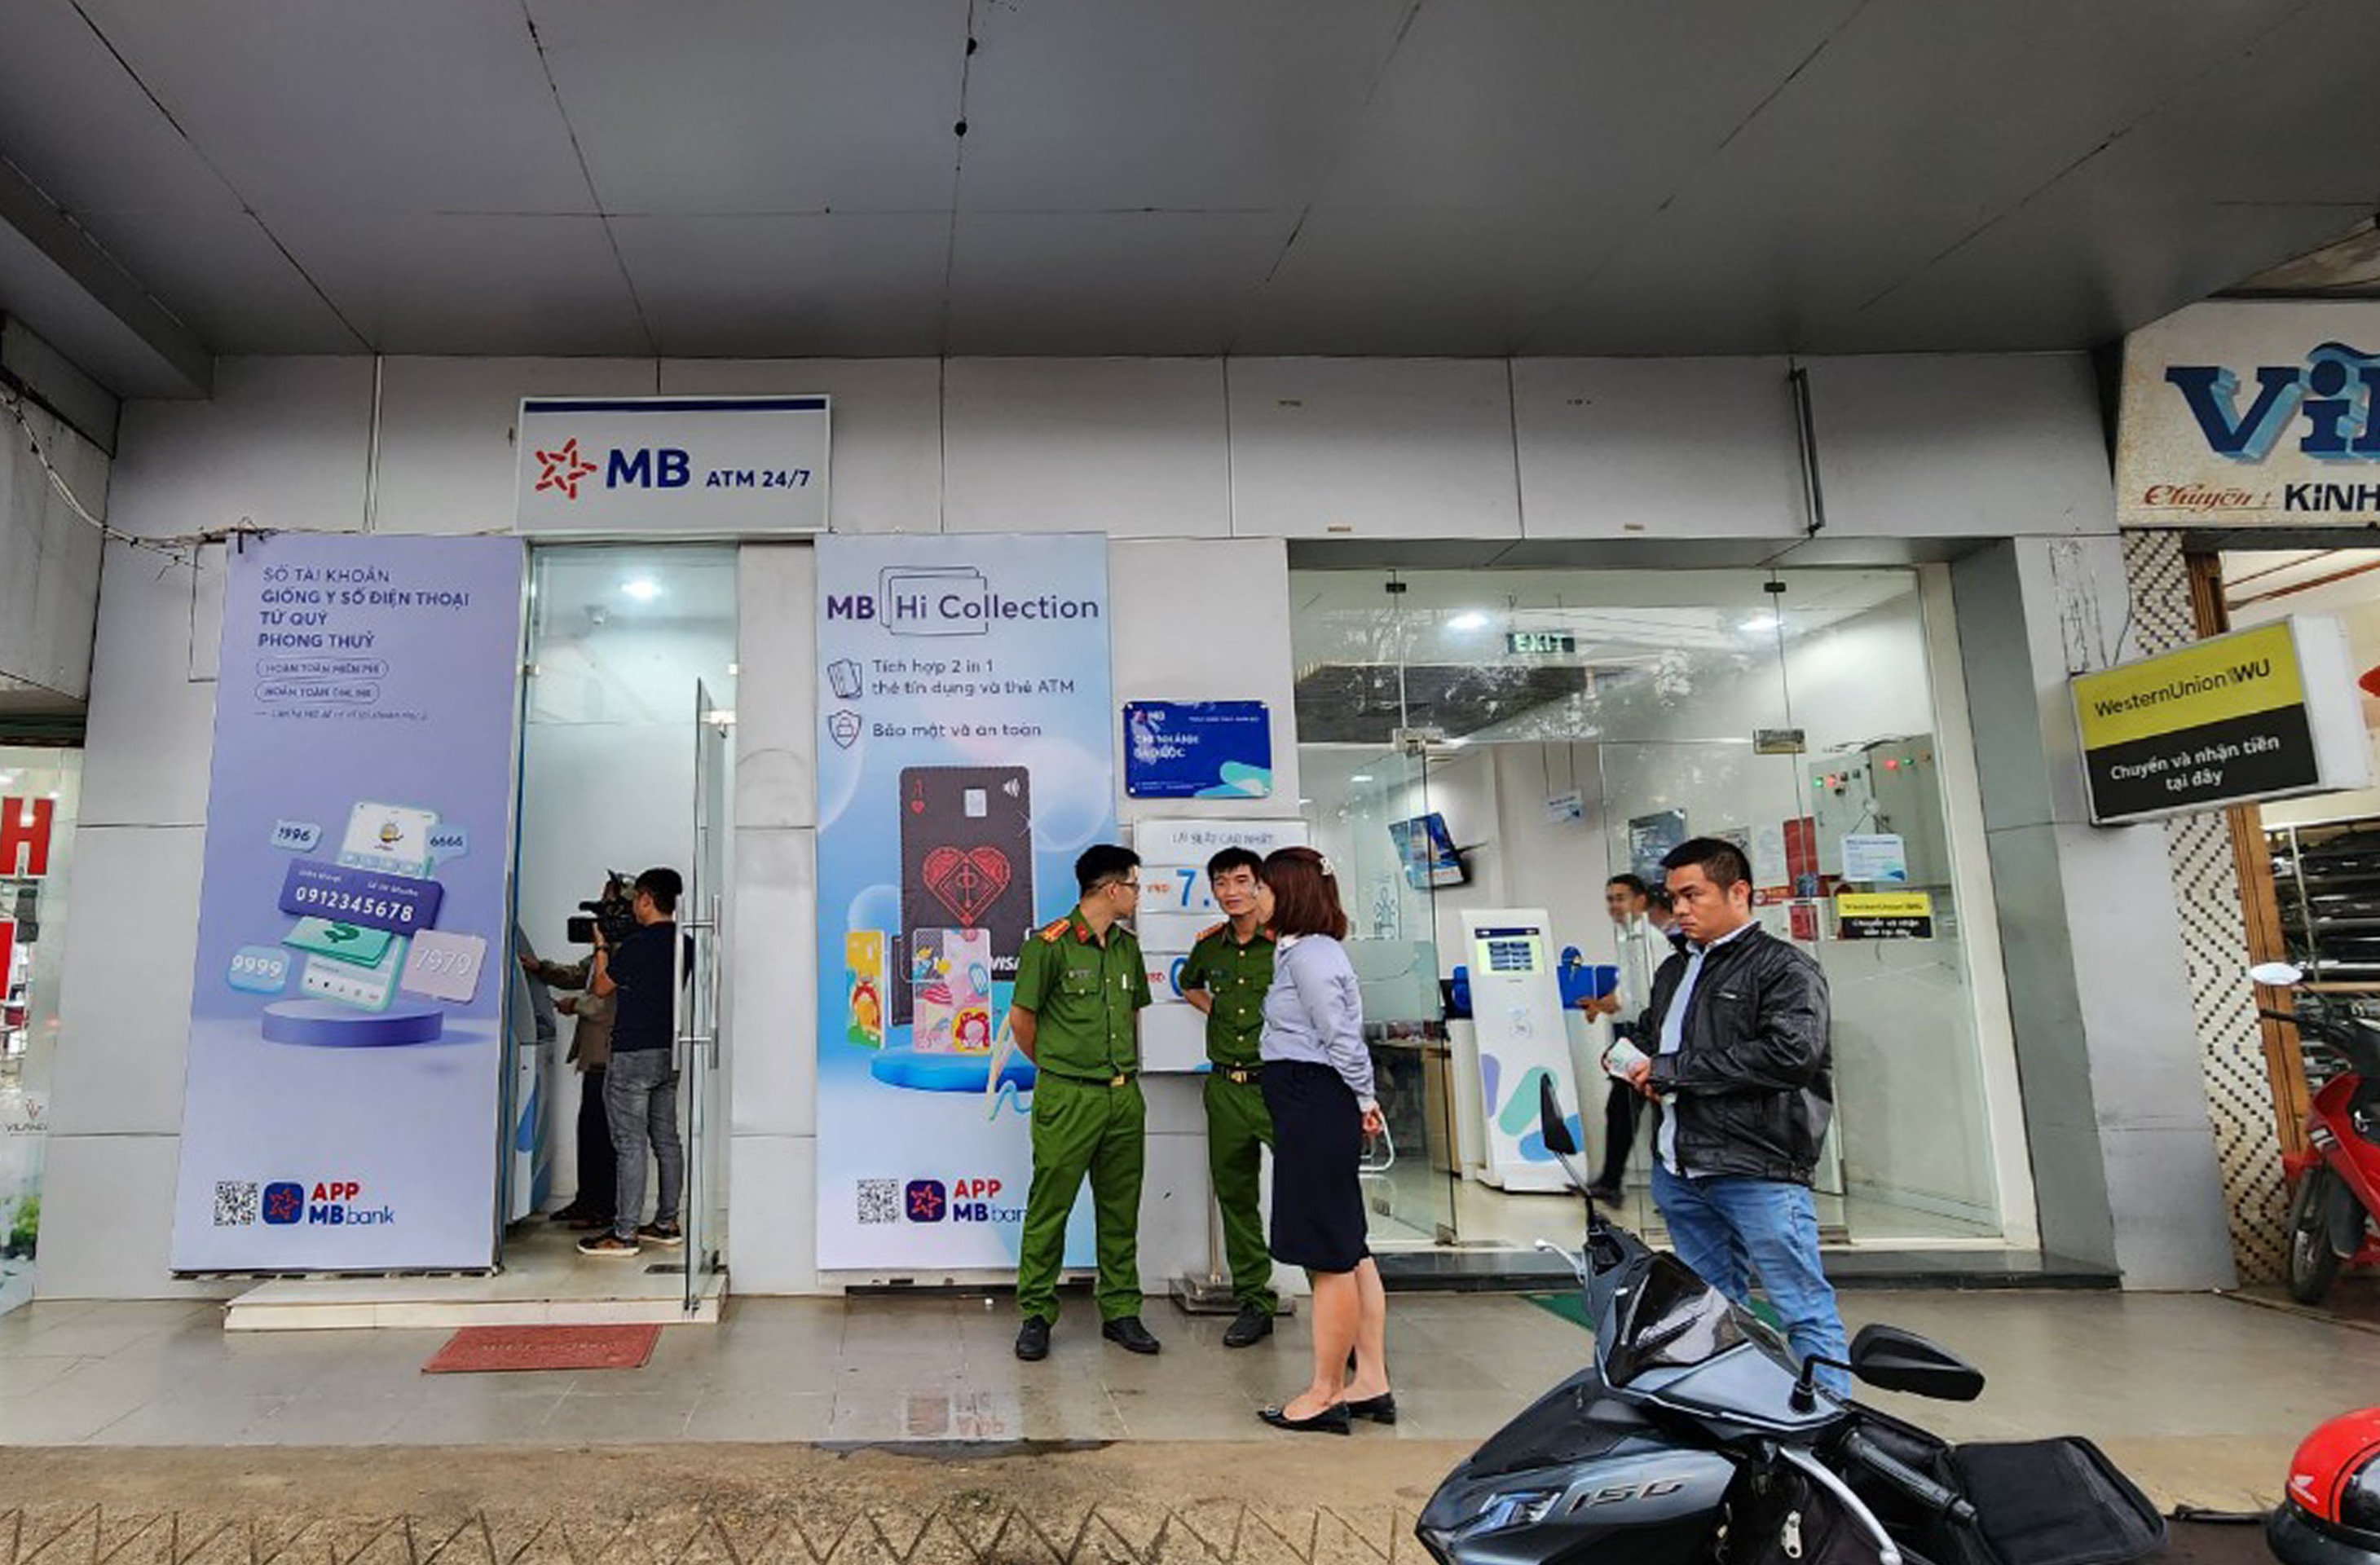 Lâm Đồng: Một khách hàng phát hiện 37 triệu đồng tại cây ATM